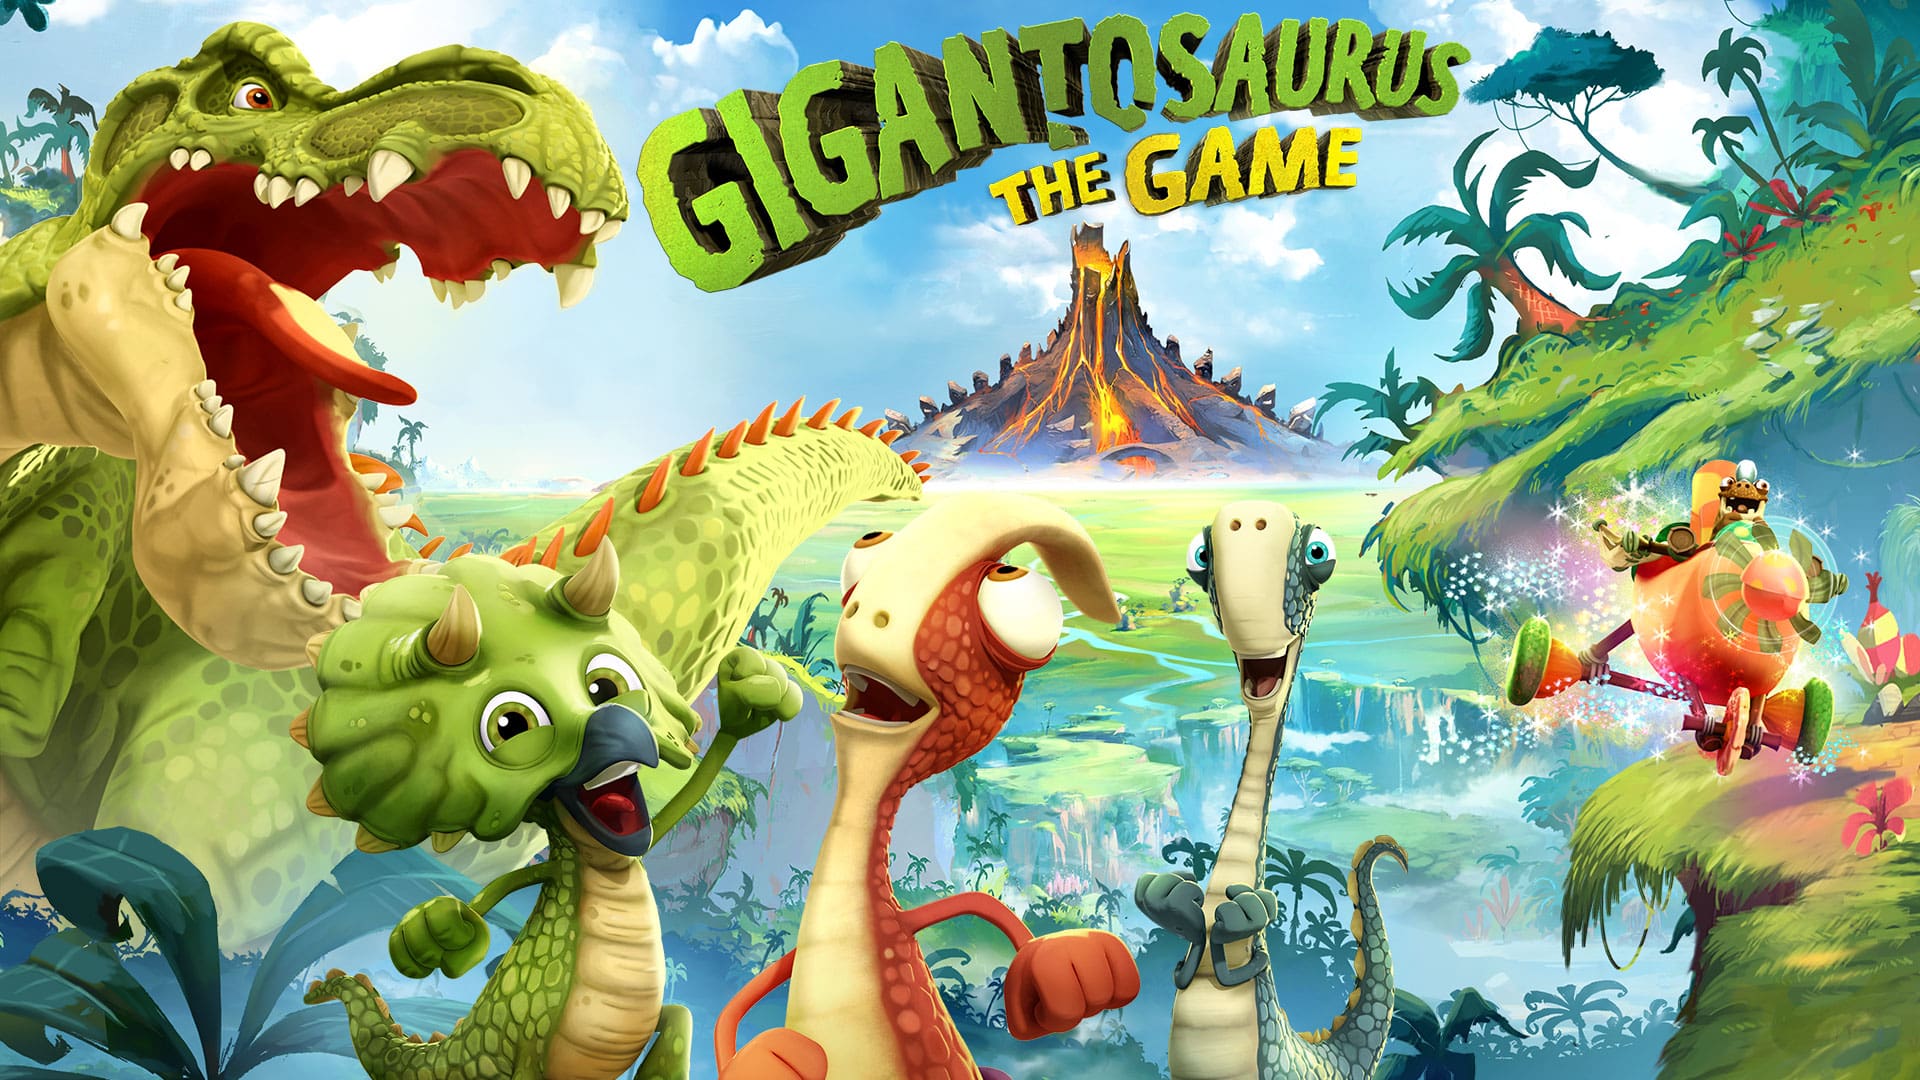 gigantosaurus the game switch hero